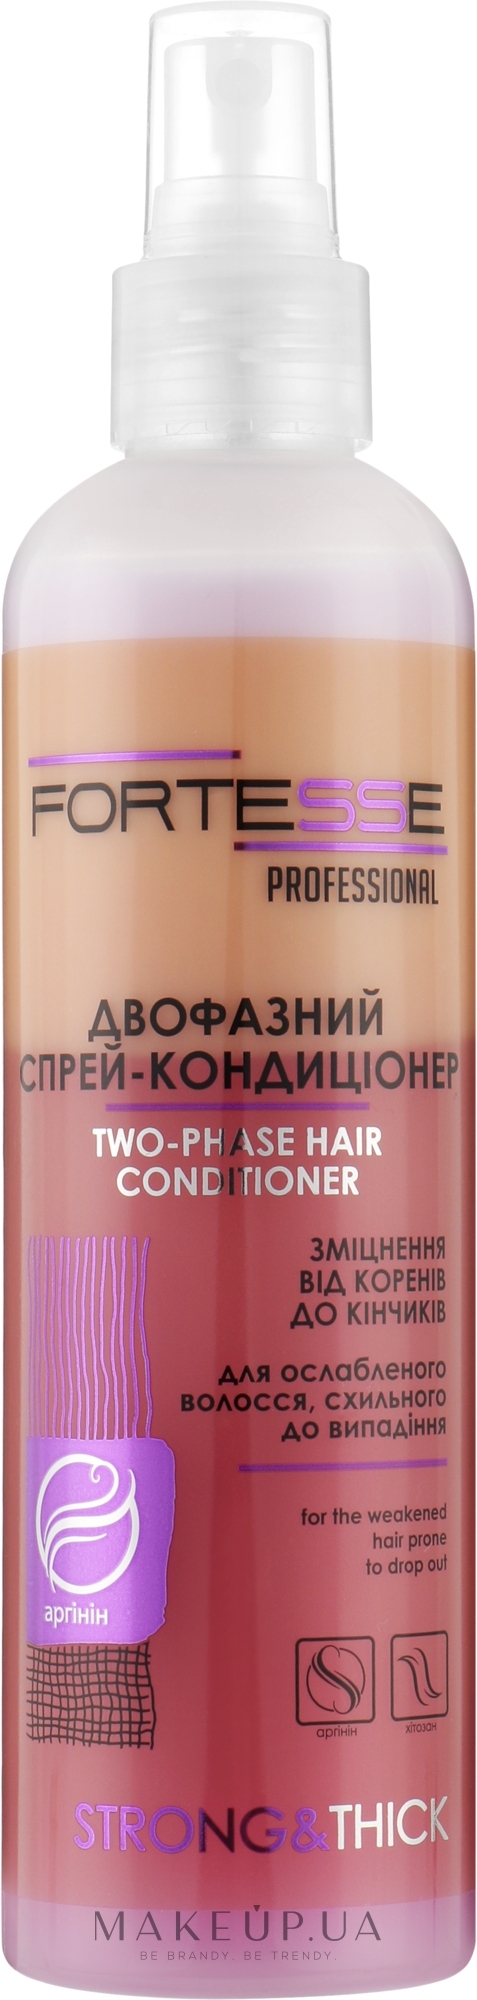 Двухфазный спрей-кондиционер укрепляющий для ослабленных волос, склонных к выпадению - Fortesse Professional Strong & Thick Duo-Phase Hair Conditioner — фото 250ml